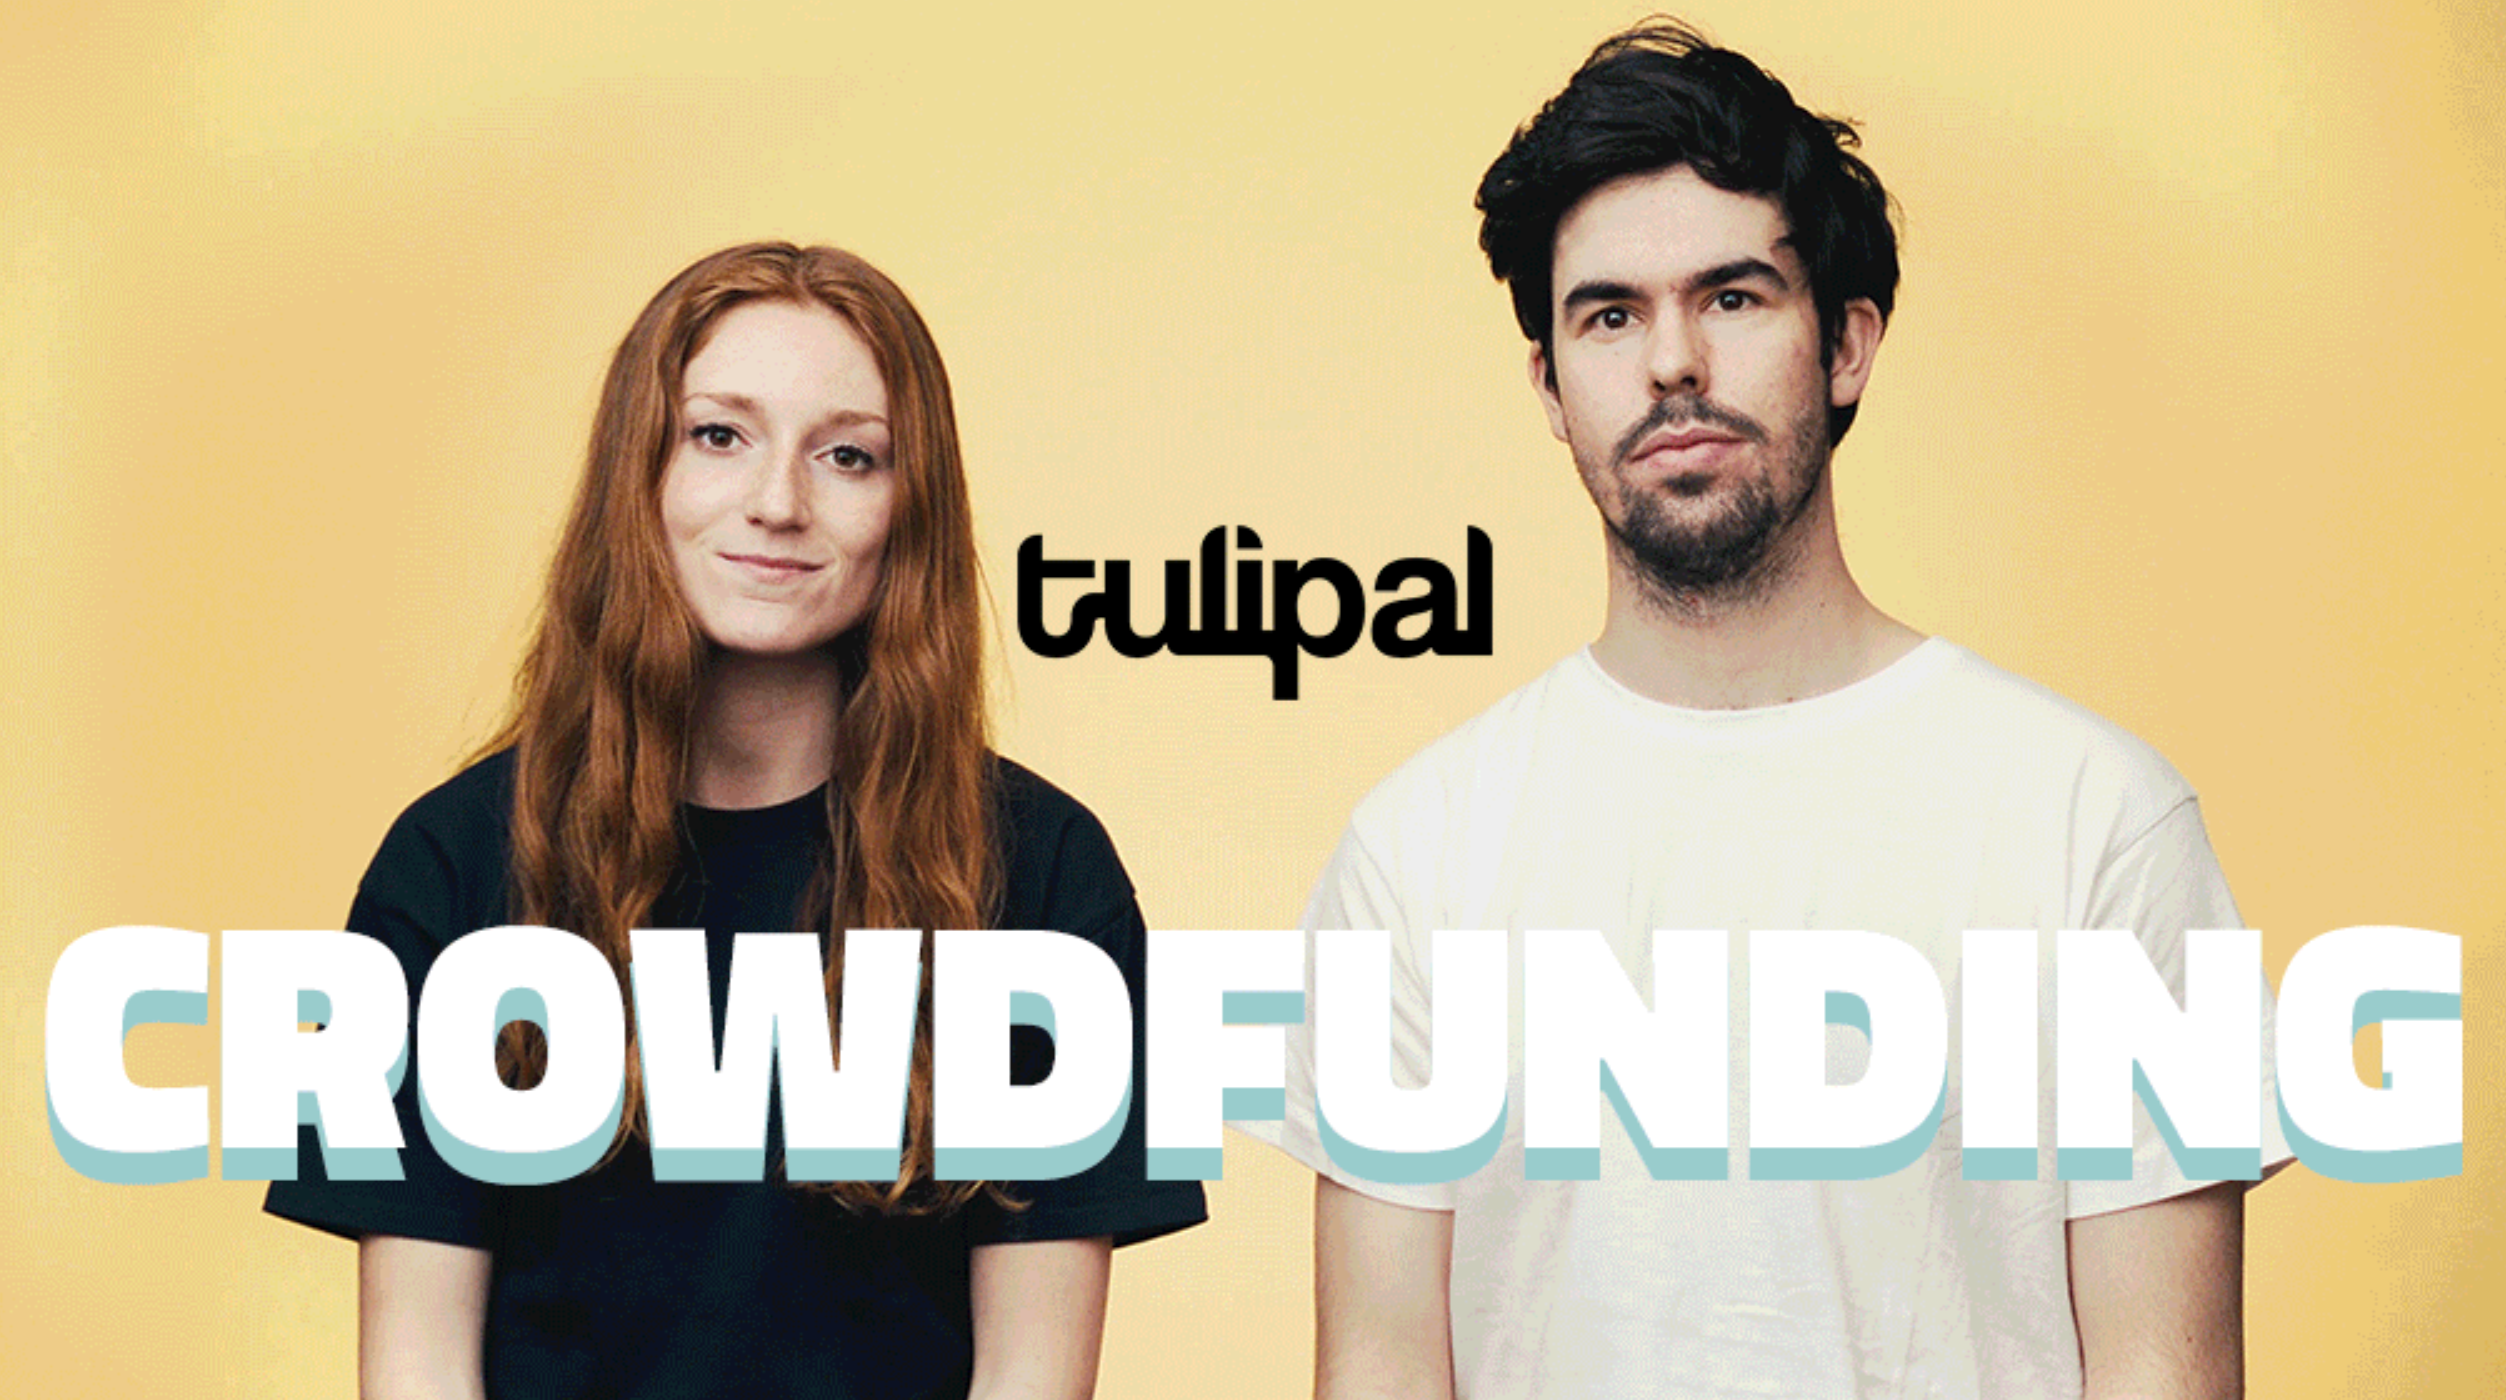 Tulipal crowfunding